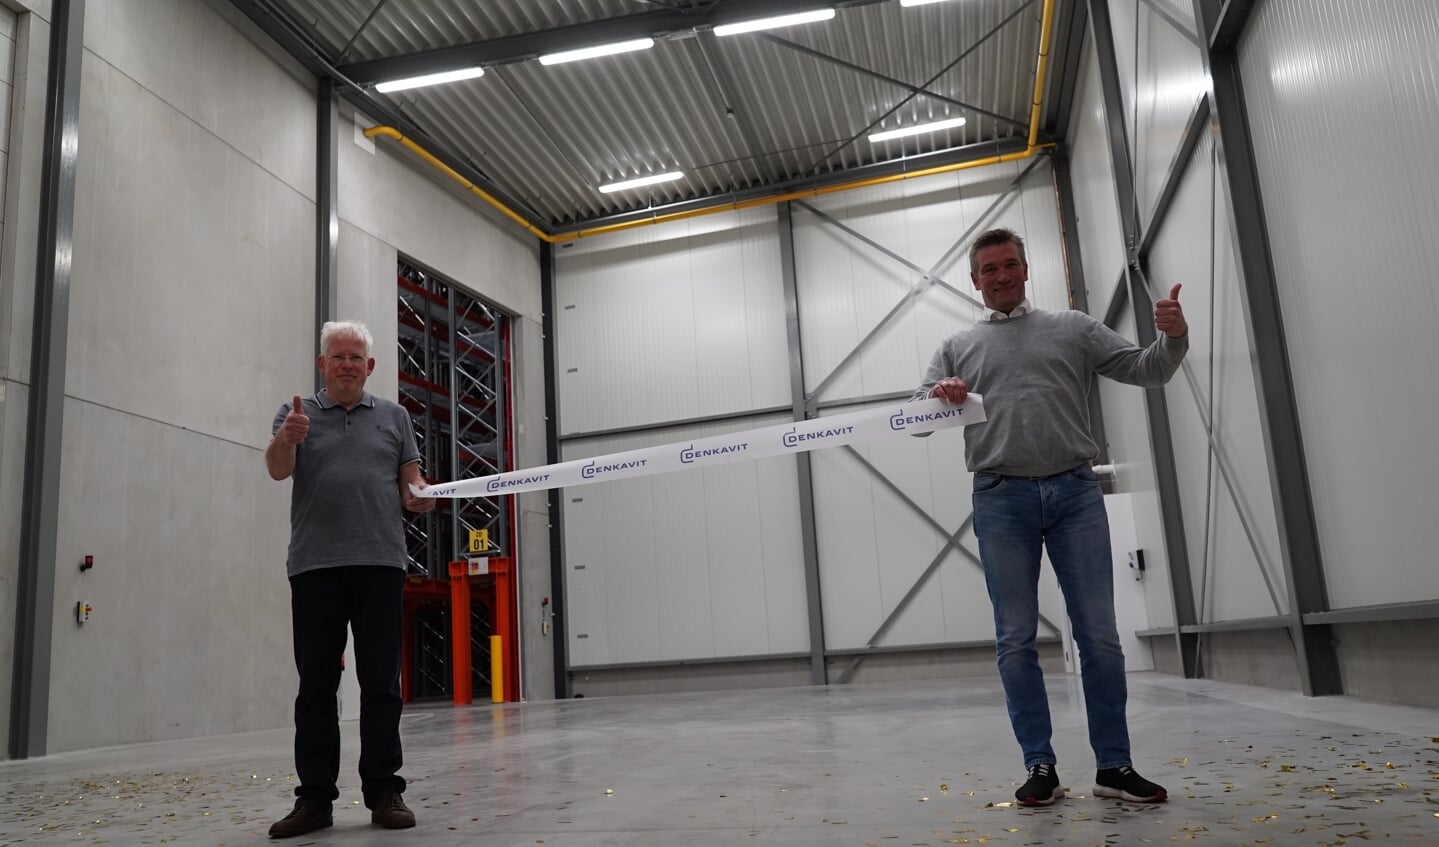 Projectleiders Wout van Veldhuizen (links) en Peter Lanfermeijer mochten het openingslint doorknippen in het nieuwe hoogbouwmagazijn van Denkavit.